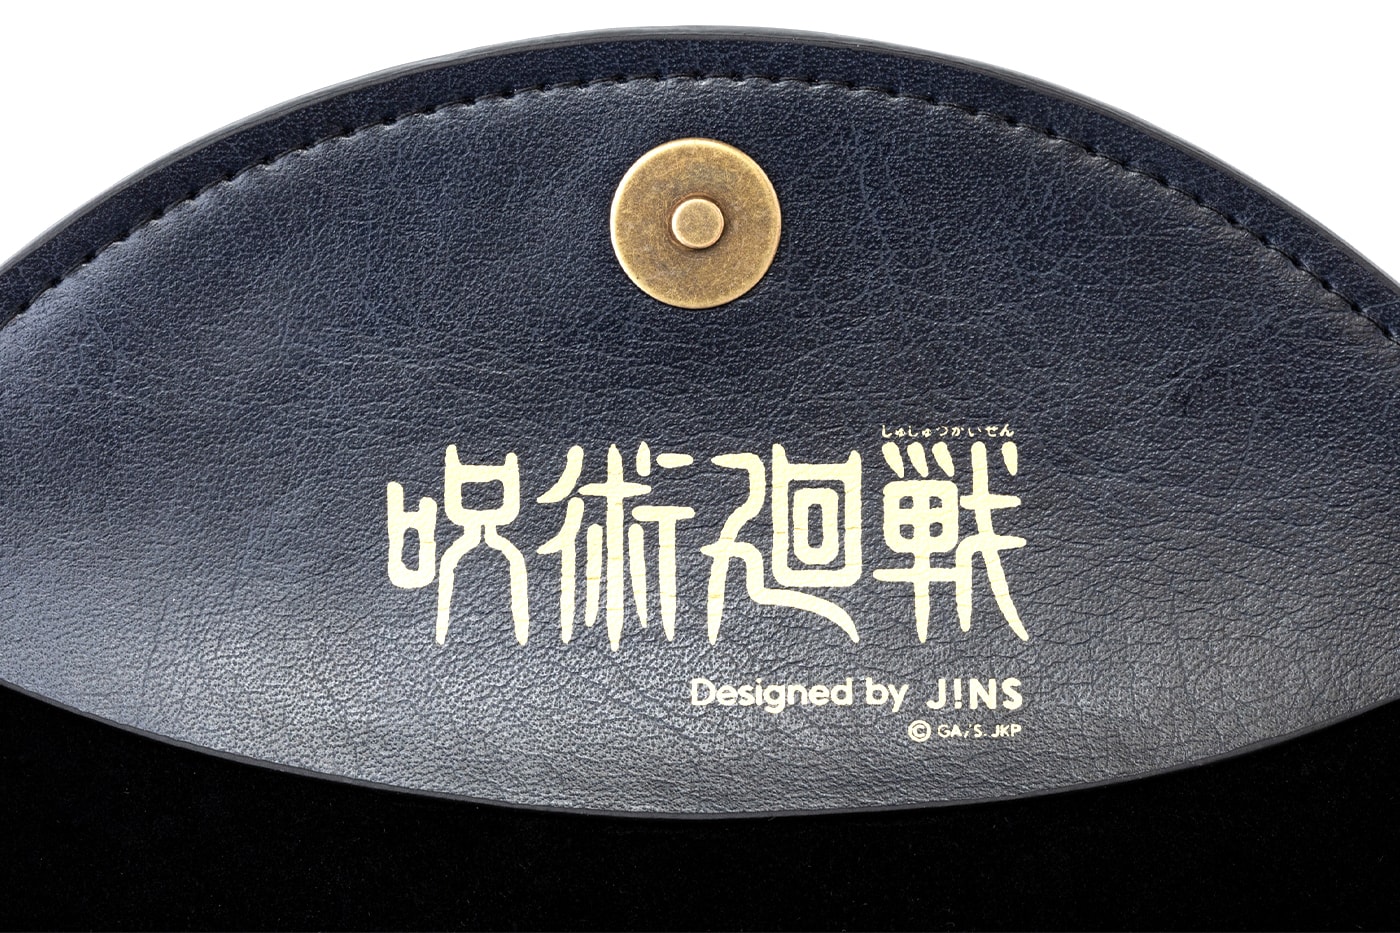 《咒術迴戰》x JINS 聯名眼鏡系列重新回歸發售